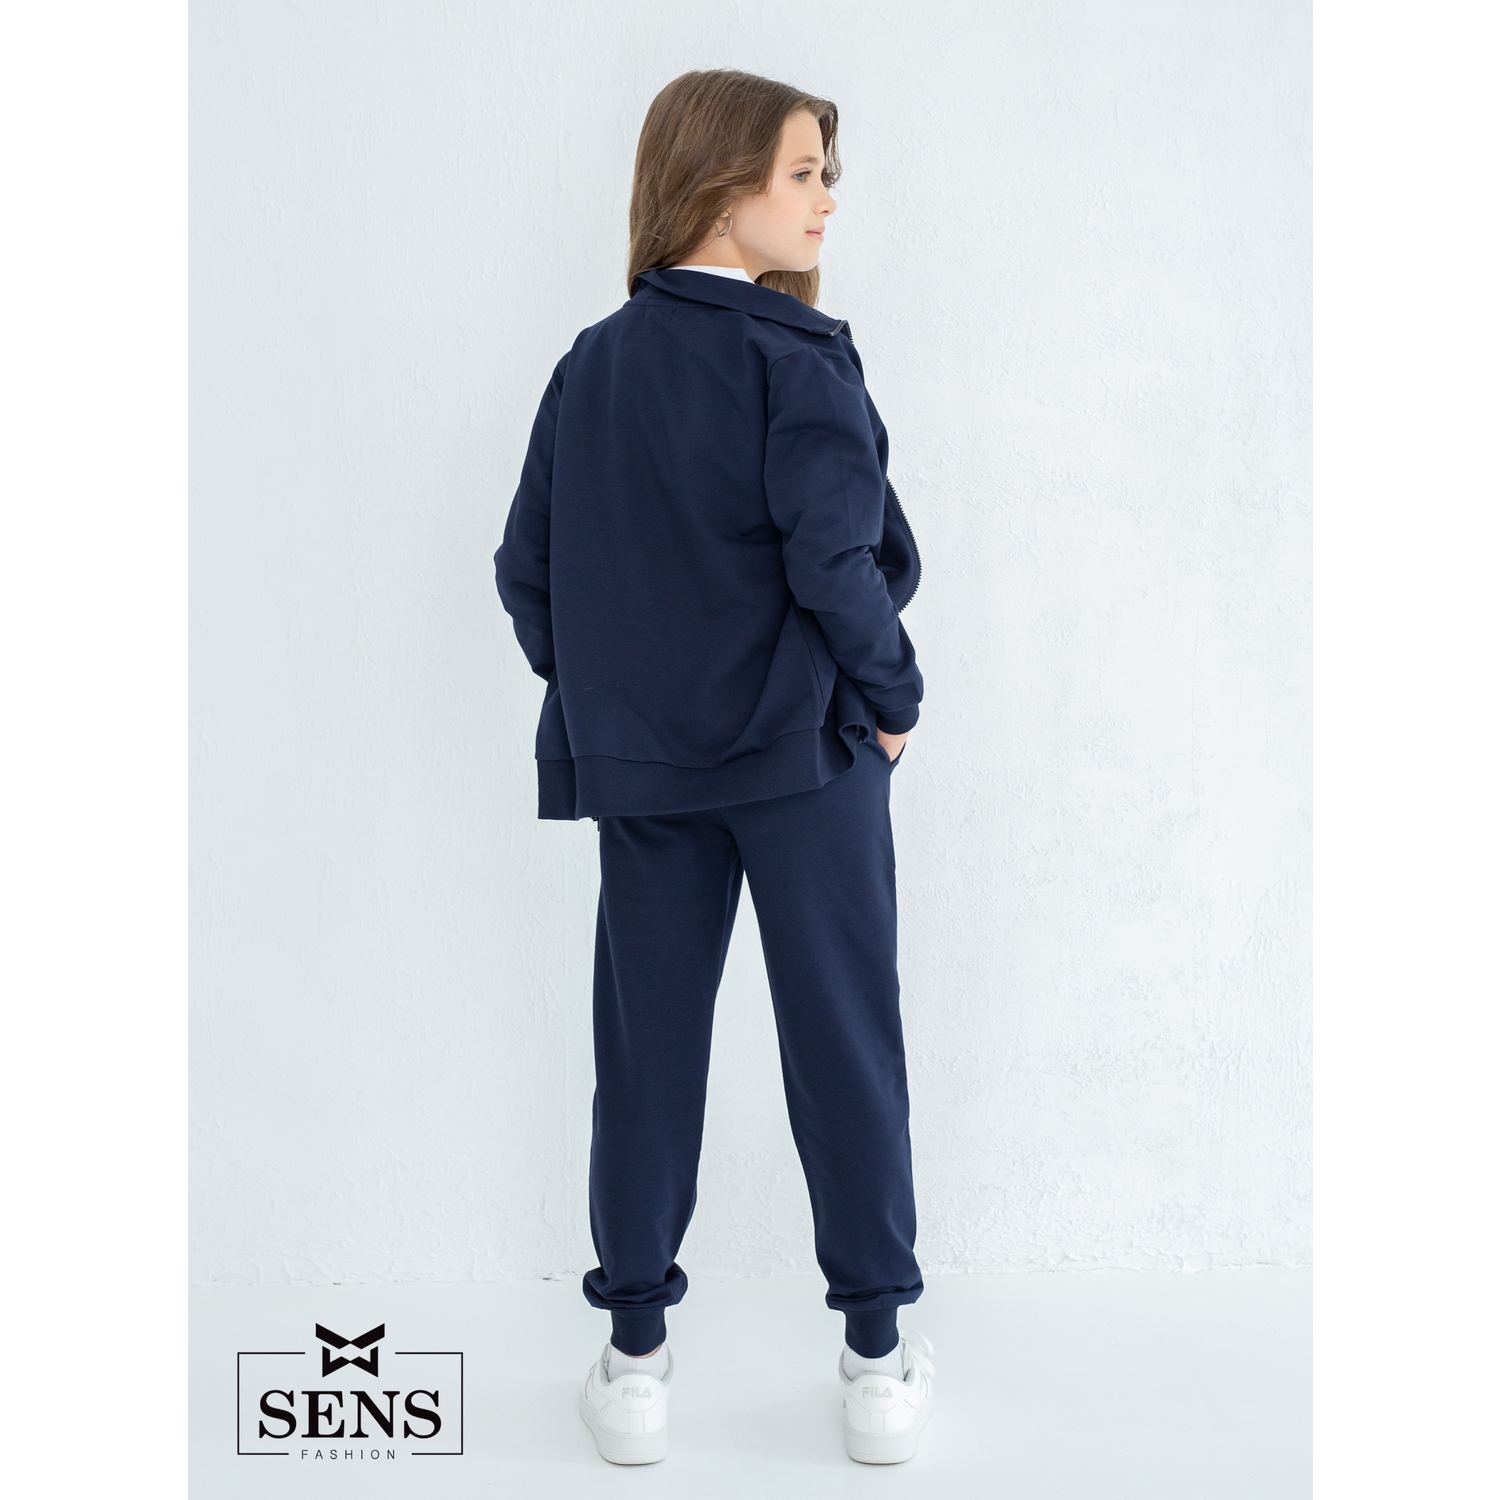 Спортивный костюм Sens Fashion СК/т.синий - фото 9